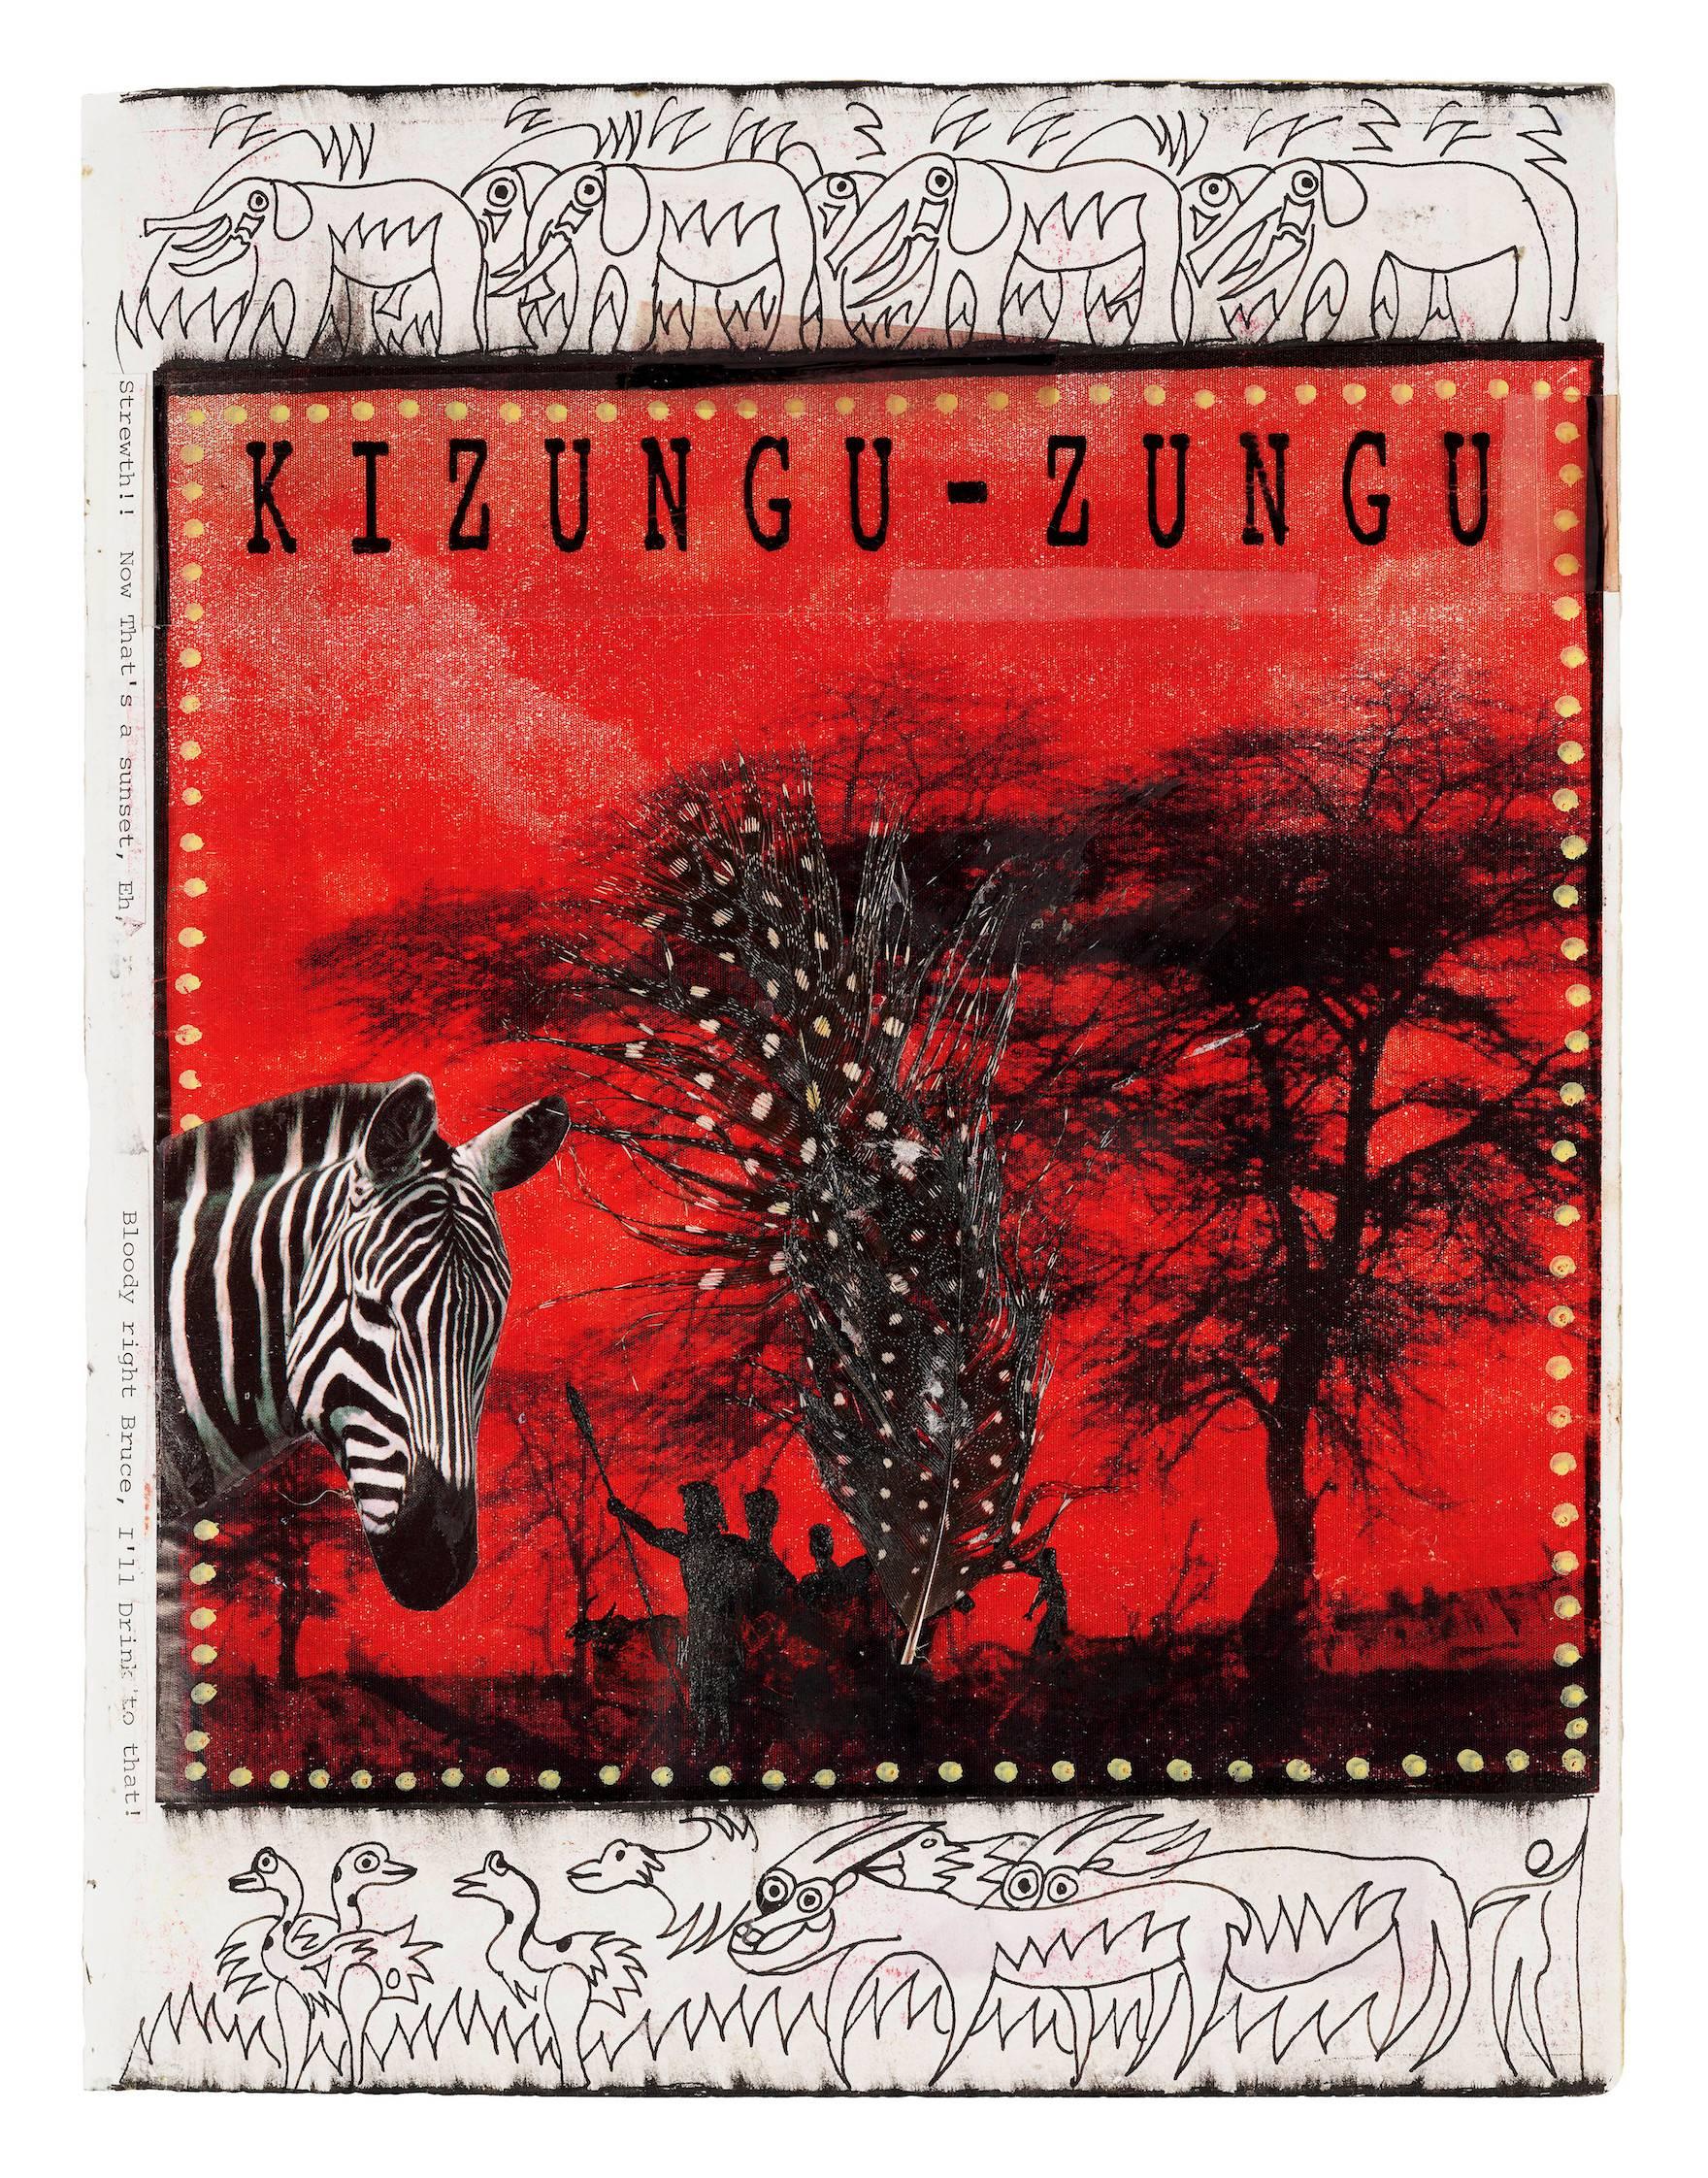 Kizungu-Zungu - Mixed Media Art by Dan Eldon